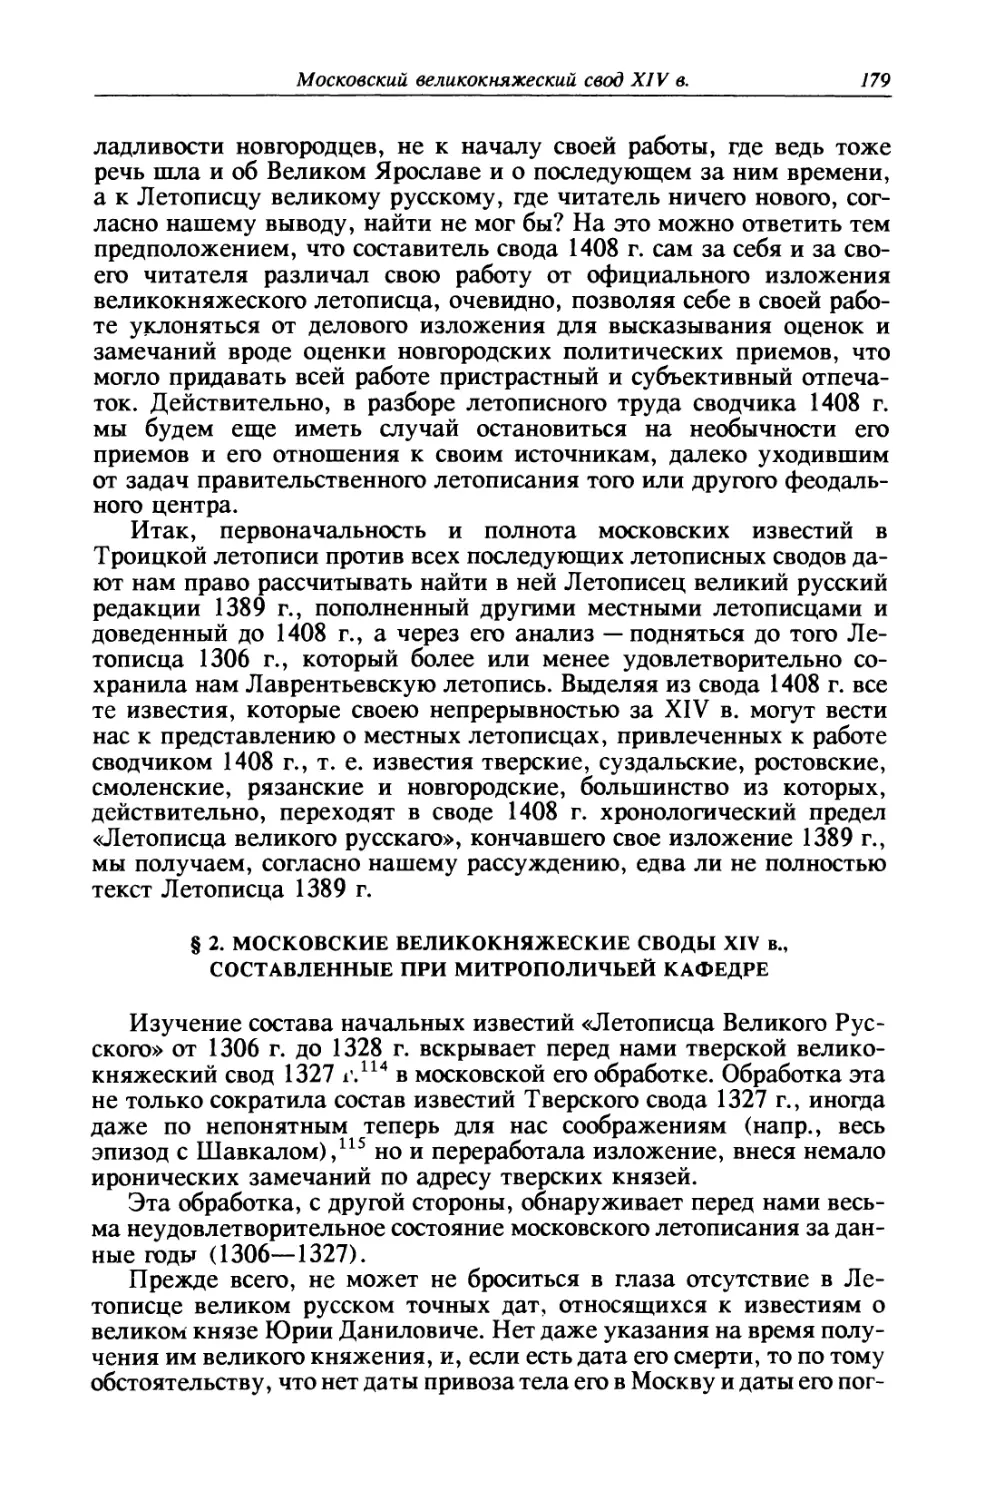 § 2. Московские великокняжеские своды XIV в., составленные при митрополичьей кафедре